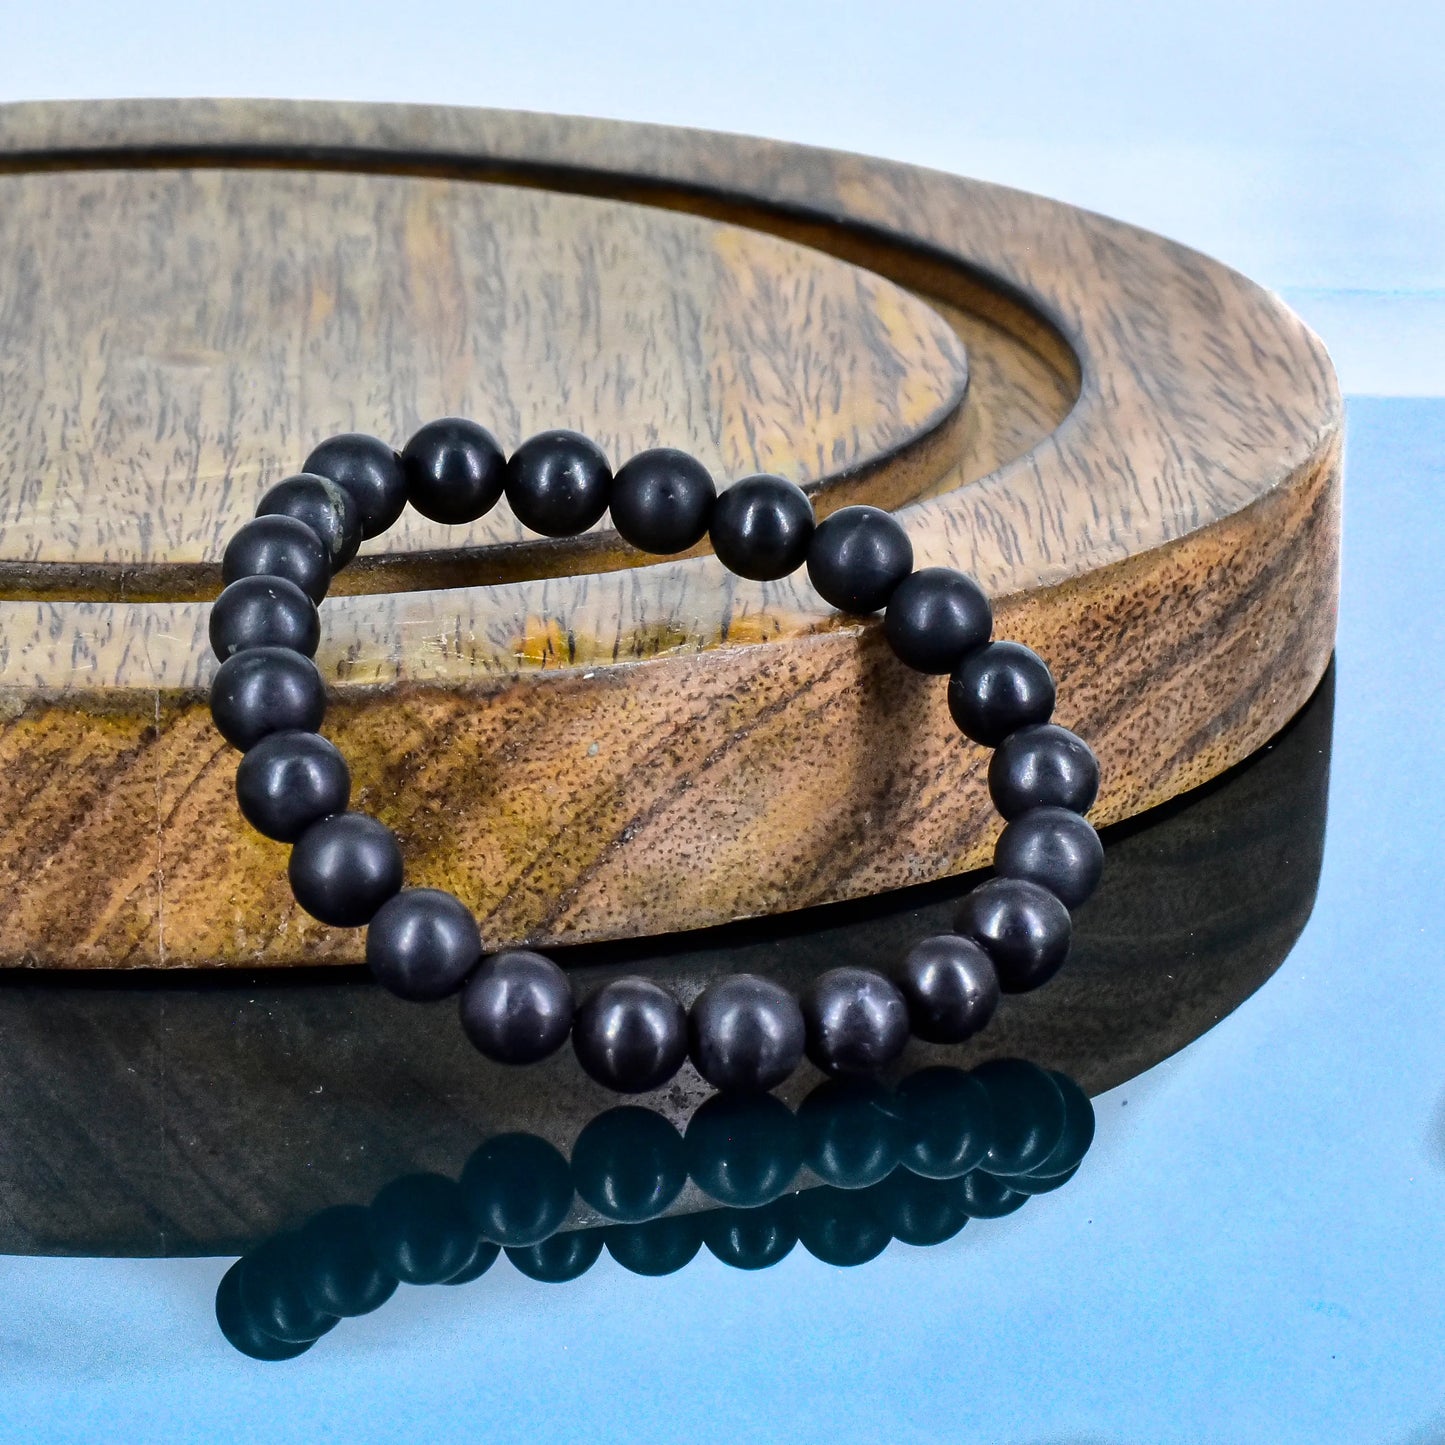 Shungite Crystal Stone Bracelet for Reiki Healing